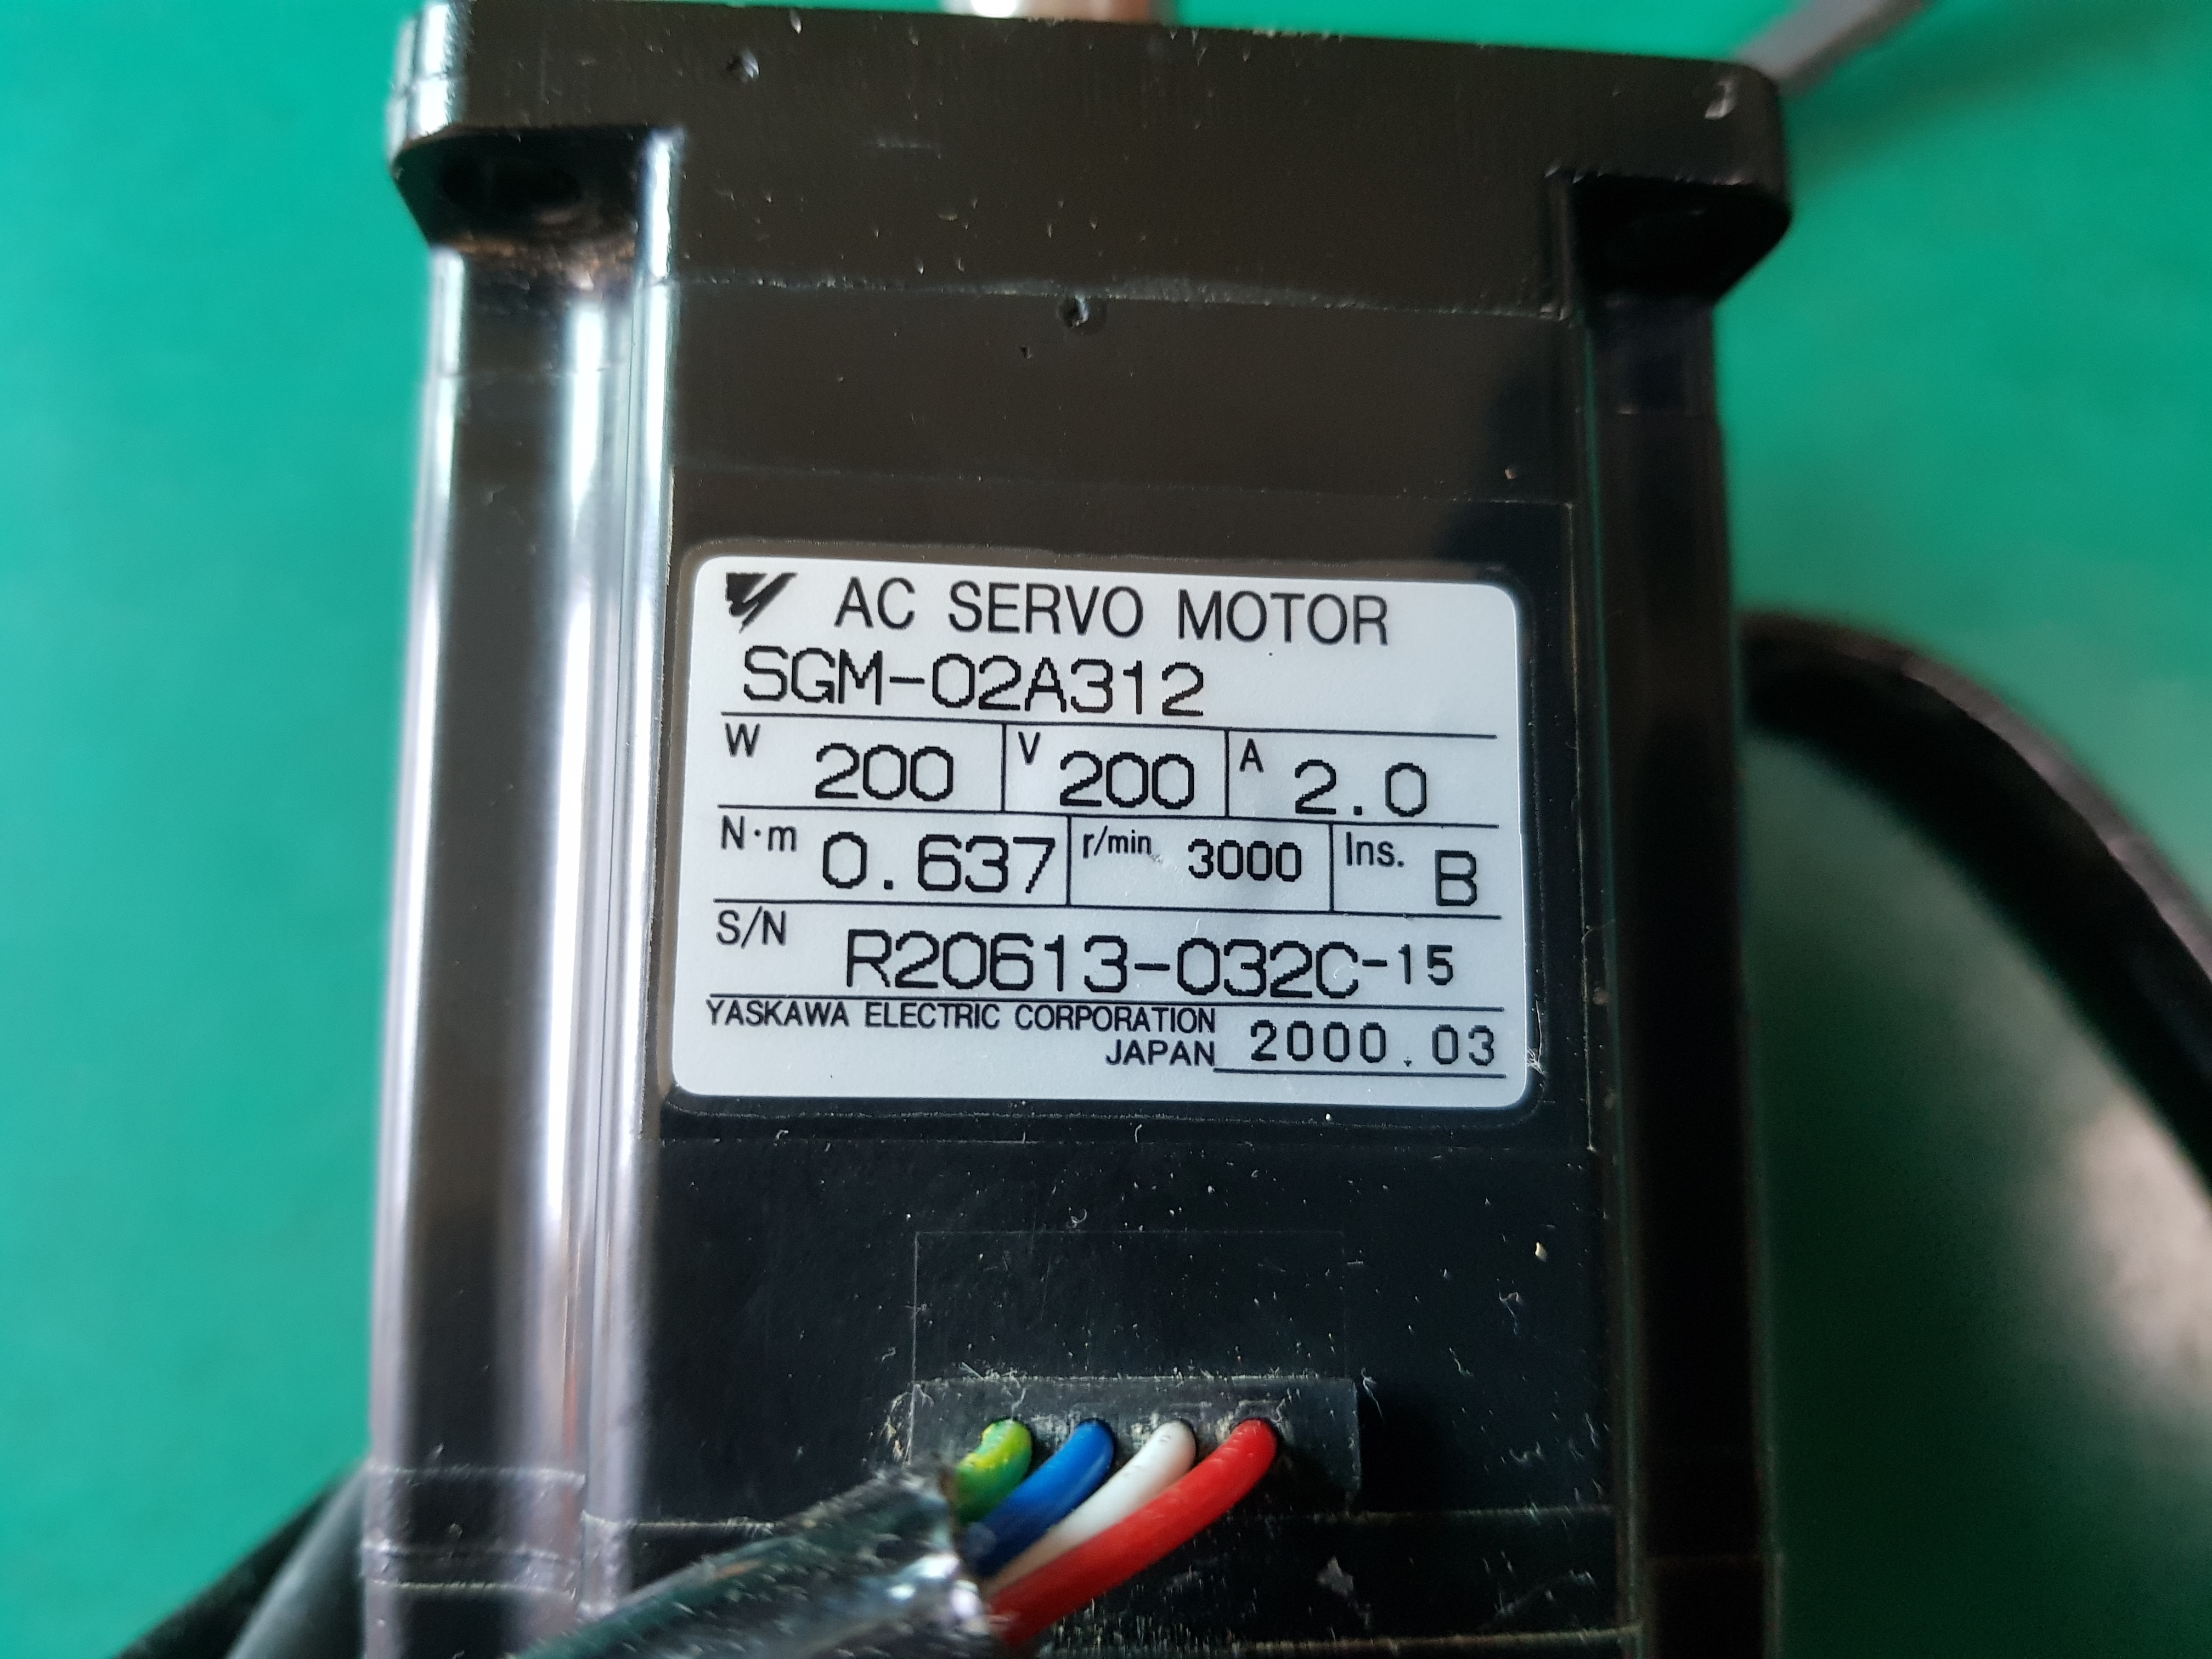 AC SERVO MOTOR SGM-02A312(200W-중고)